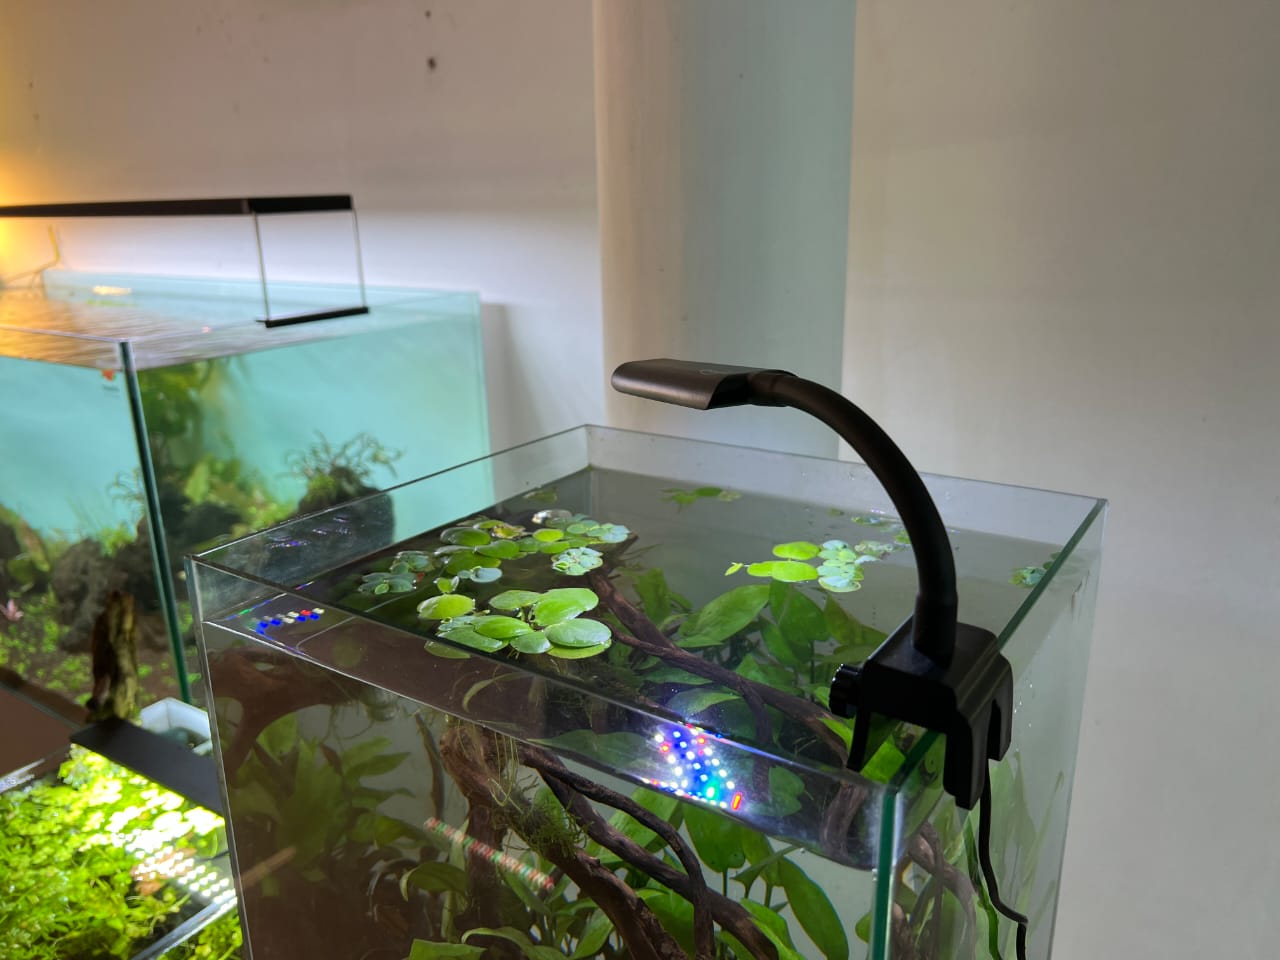 Enguia Wrgb Dimmable Aquarium nano Led Light 15cm to 30cm - Petsgool Online